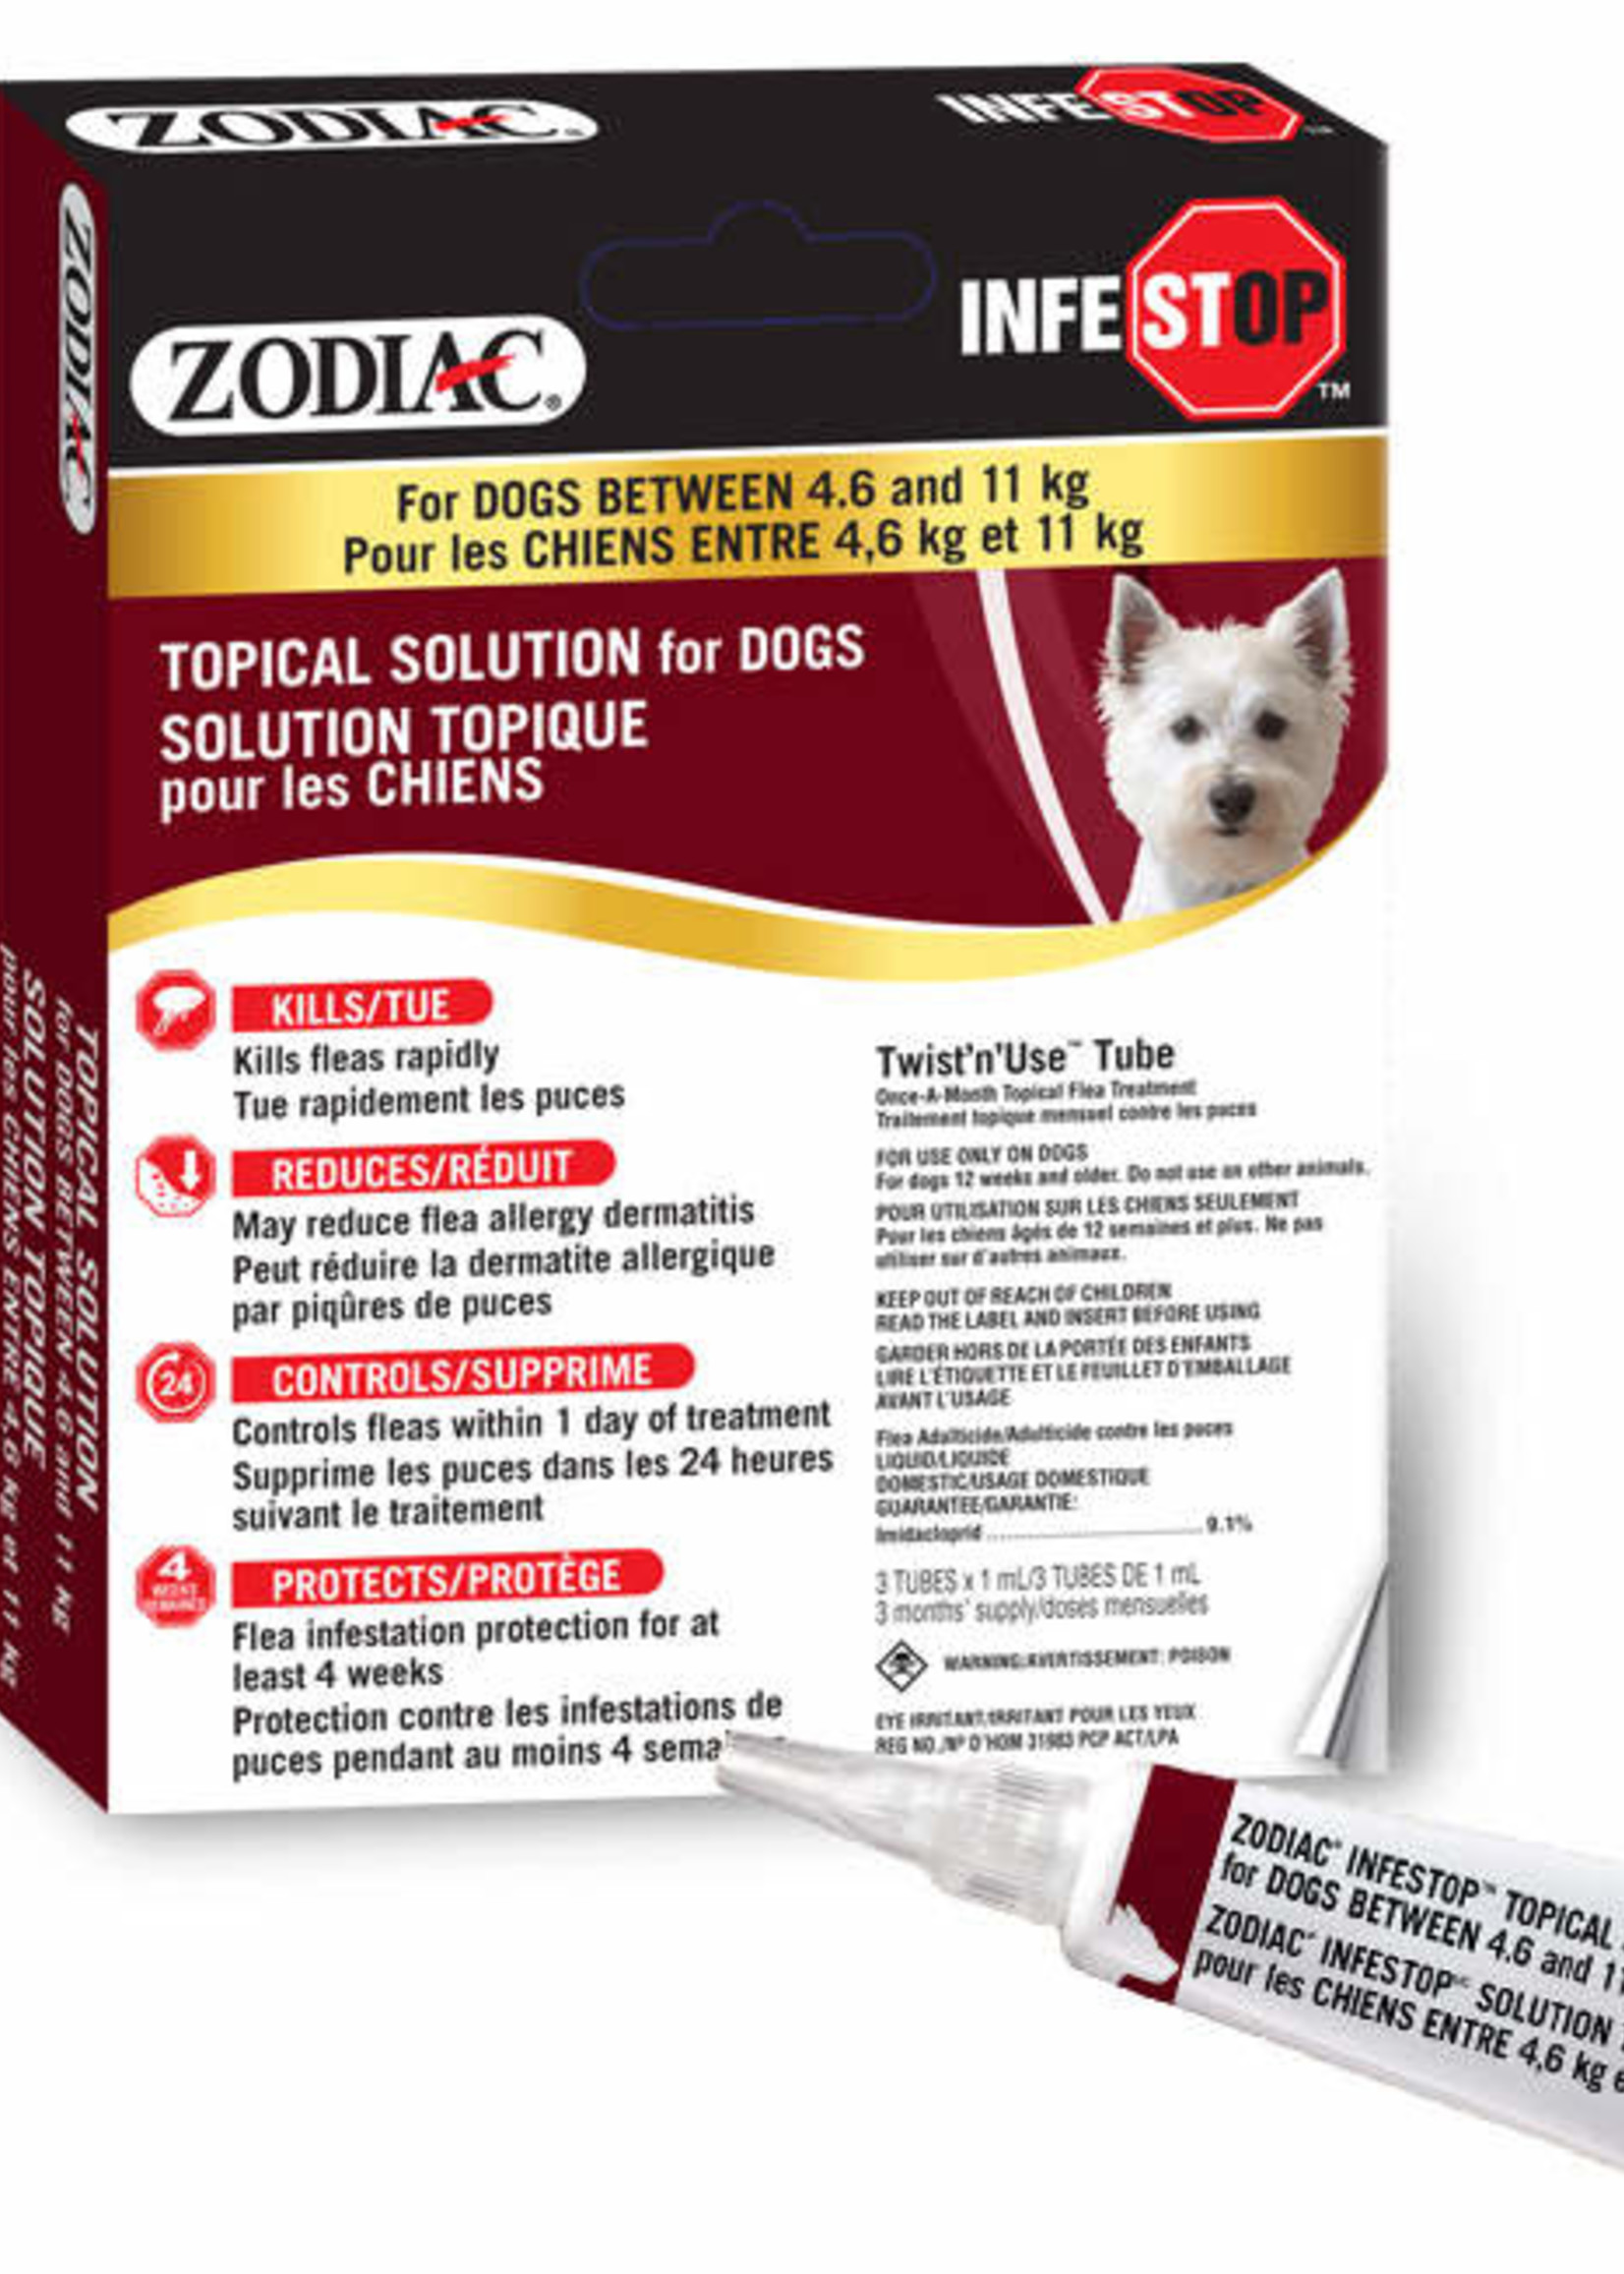 Zodiac® Zodiac® Infestop™ for Dogs between 4.6-11kG